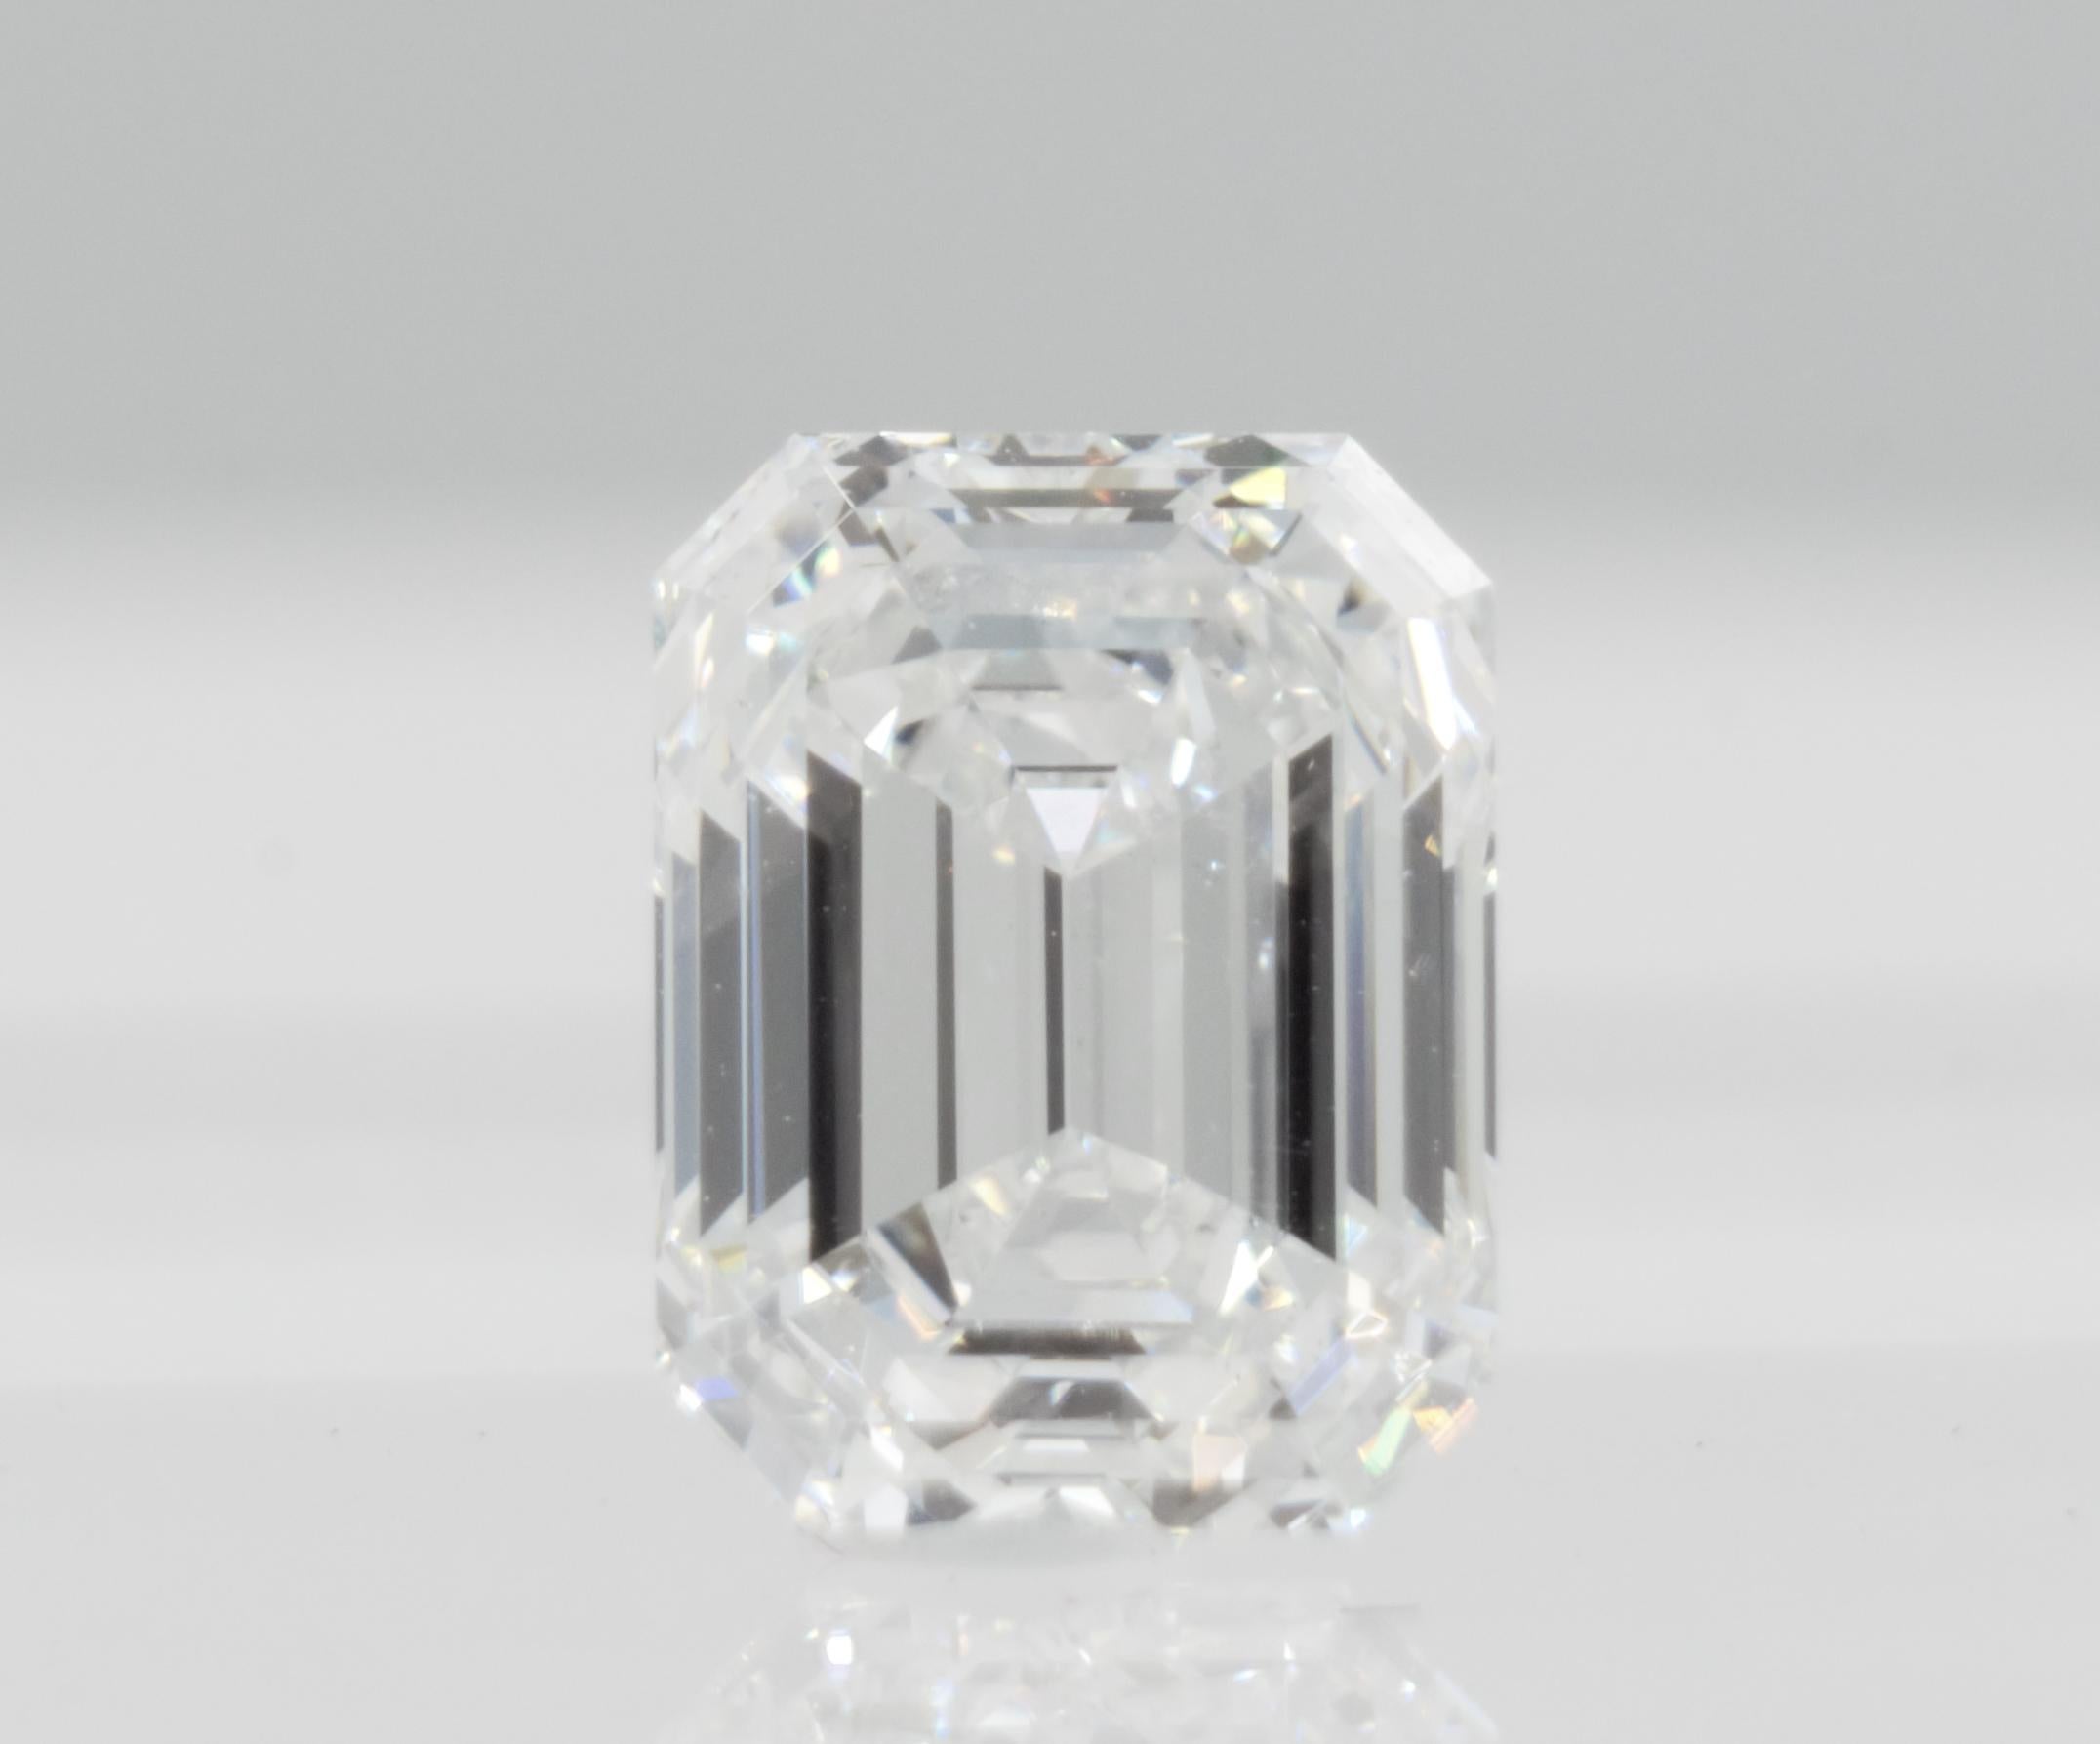 Magnifique diamant en vrac de 1,60ct de taille émeraude certifié par le GIA avec une inscription au laser no# 1175388529.  Couleur F et clarté VS1 sans fluorescence. Le diamant est un double XX pour son excellent polissage et sa symétrie. Le